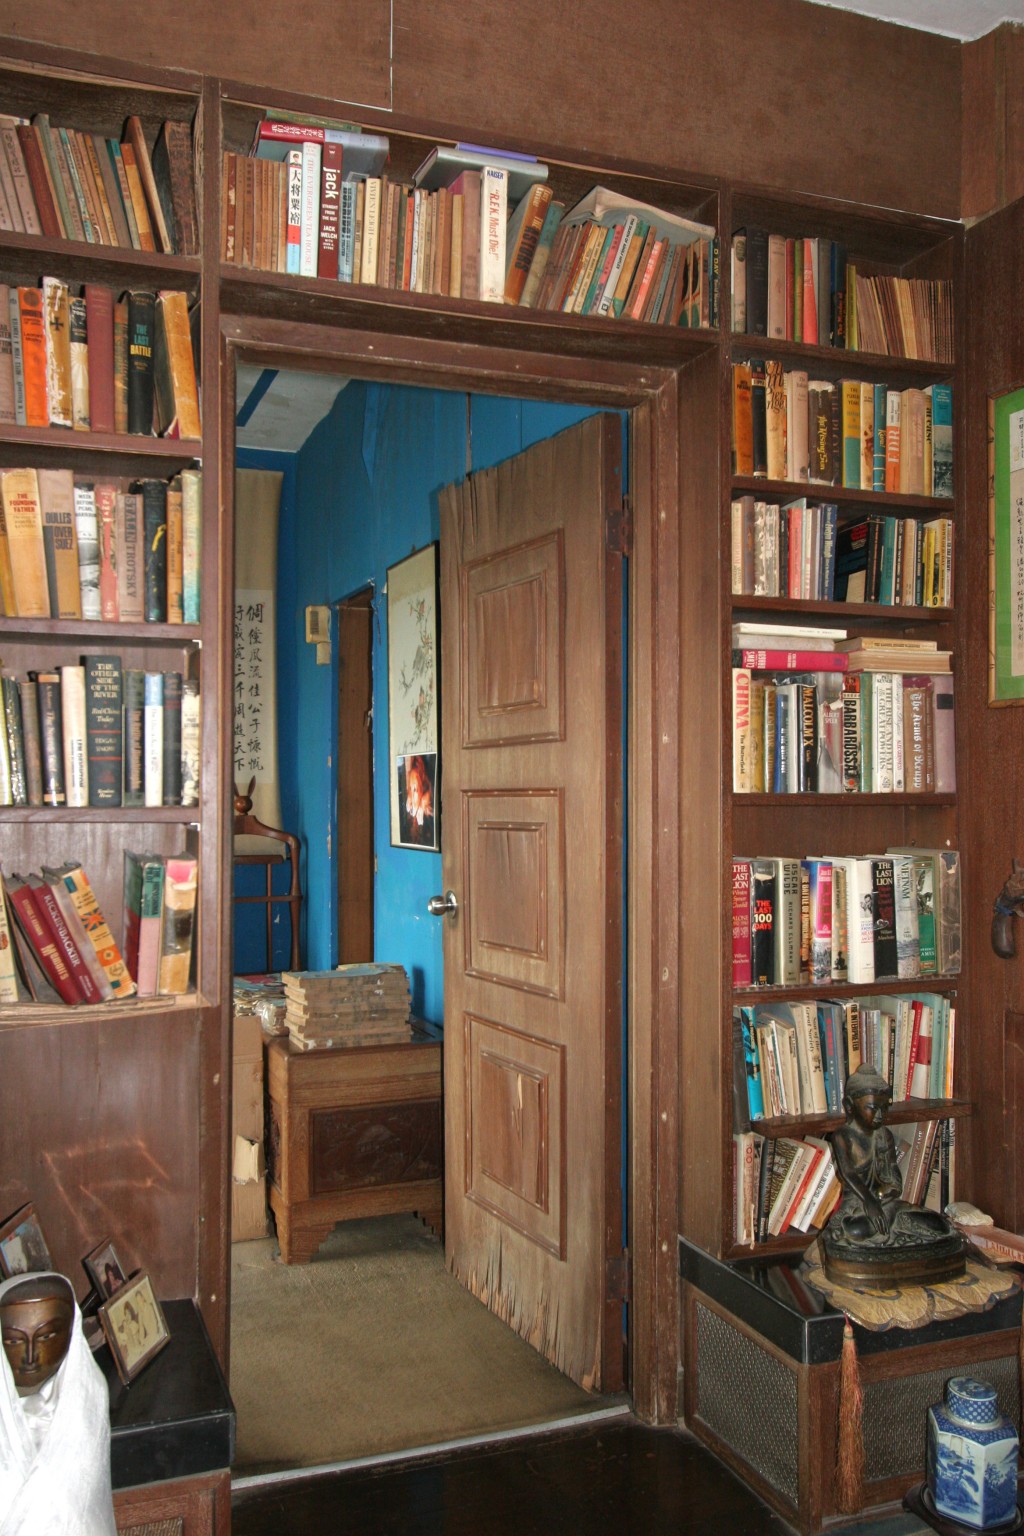 睡房门外的书架放满书籍。资料图片